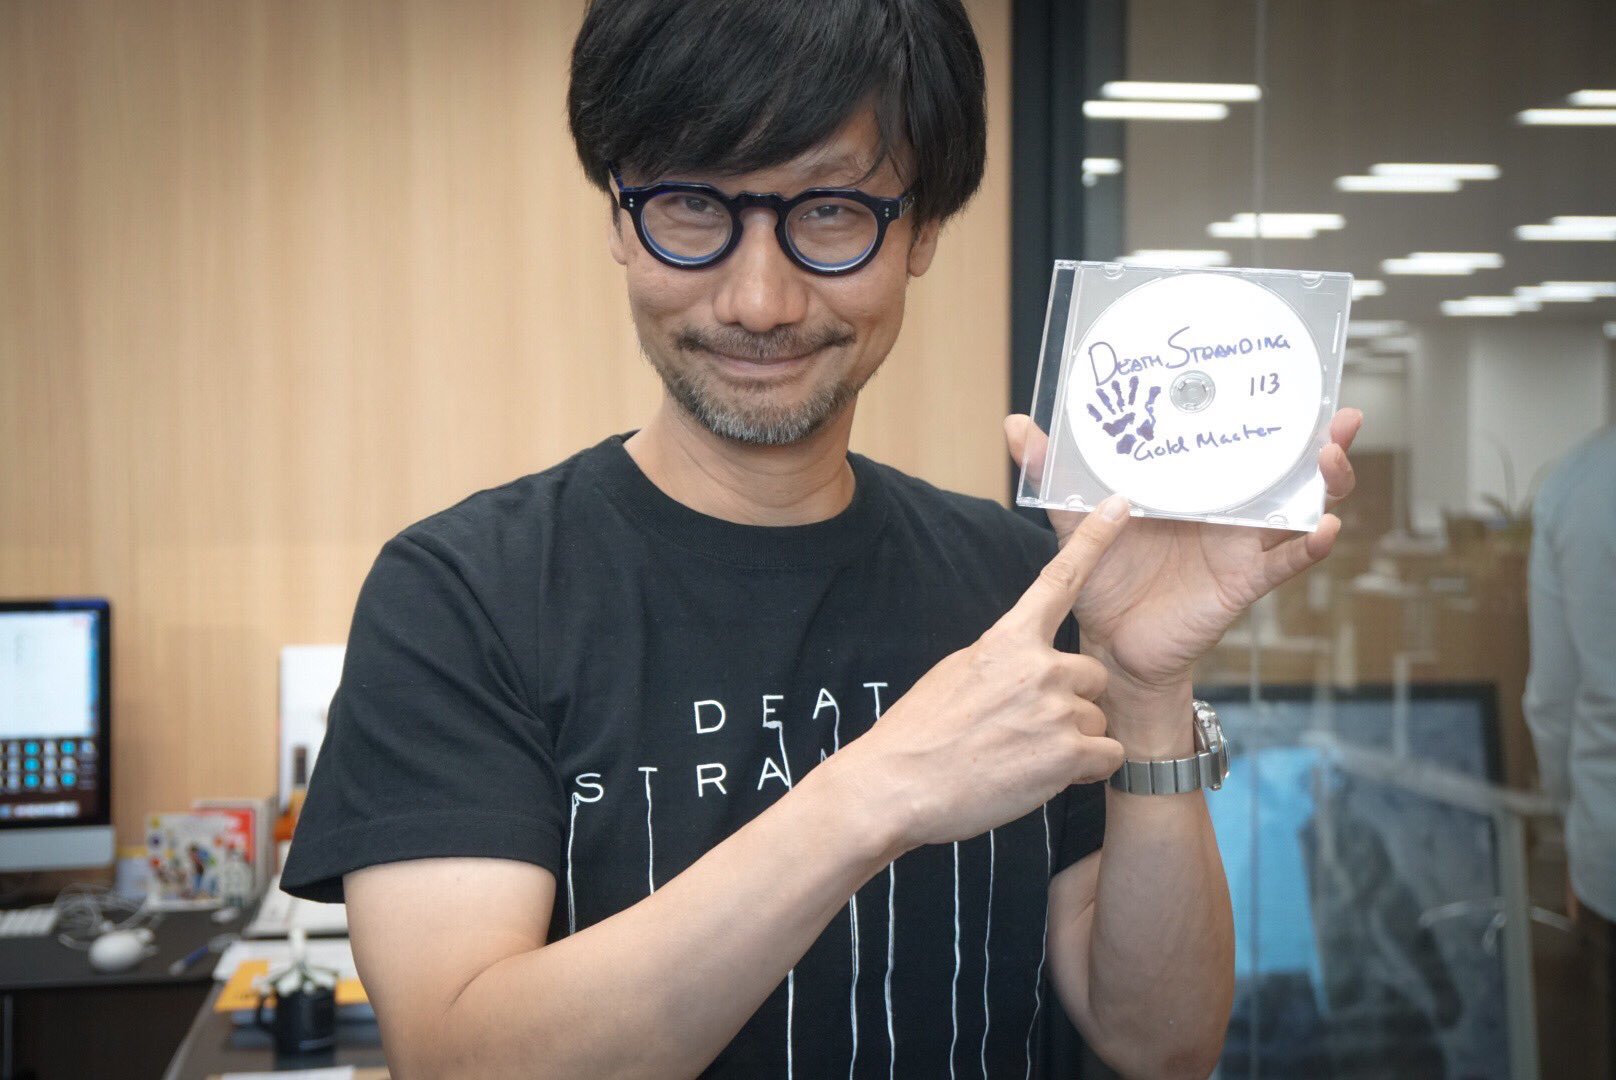 Hideo Kojima confirmó que Death Stranding ya es “gold”, el desarrollo del juego está finalizado